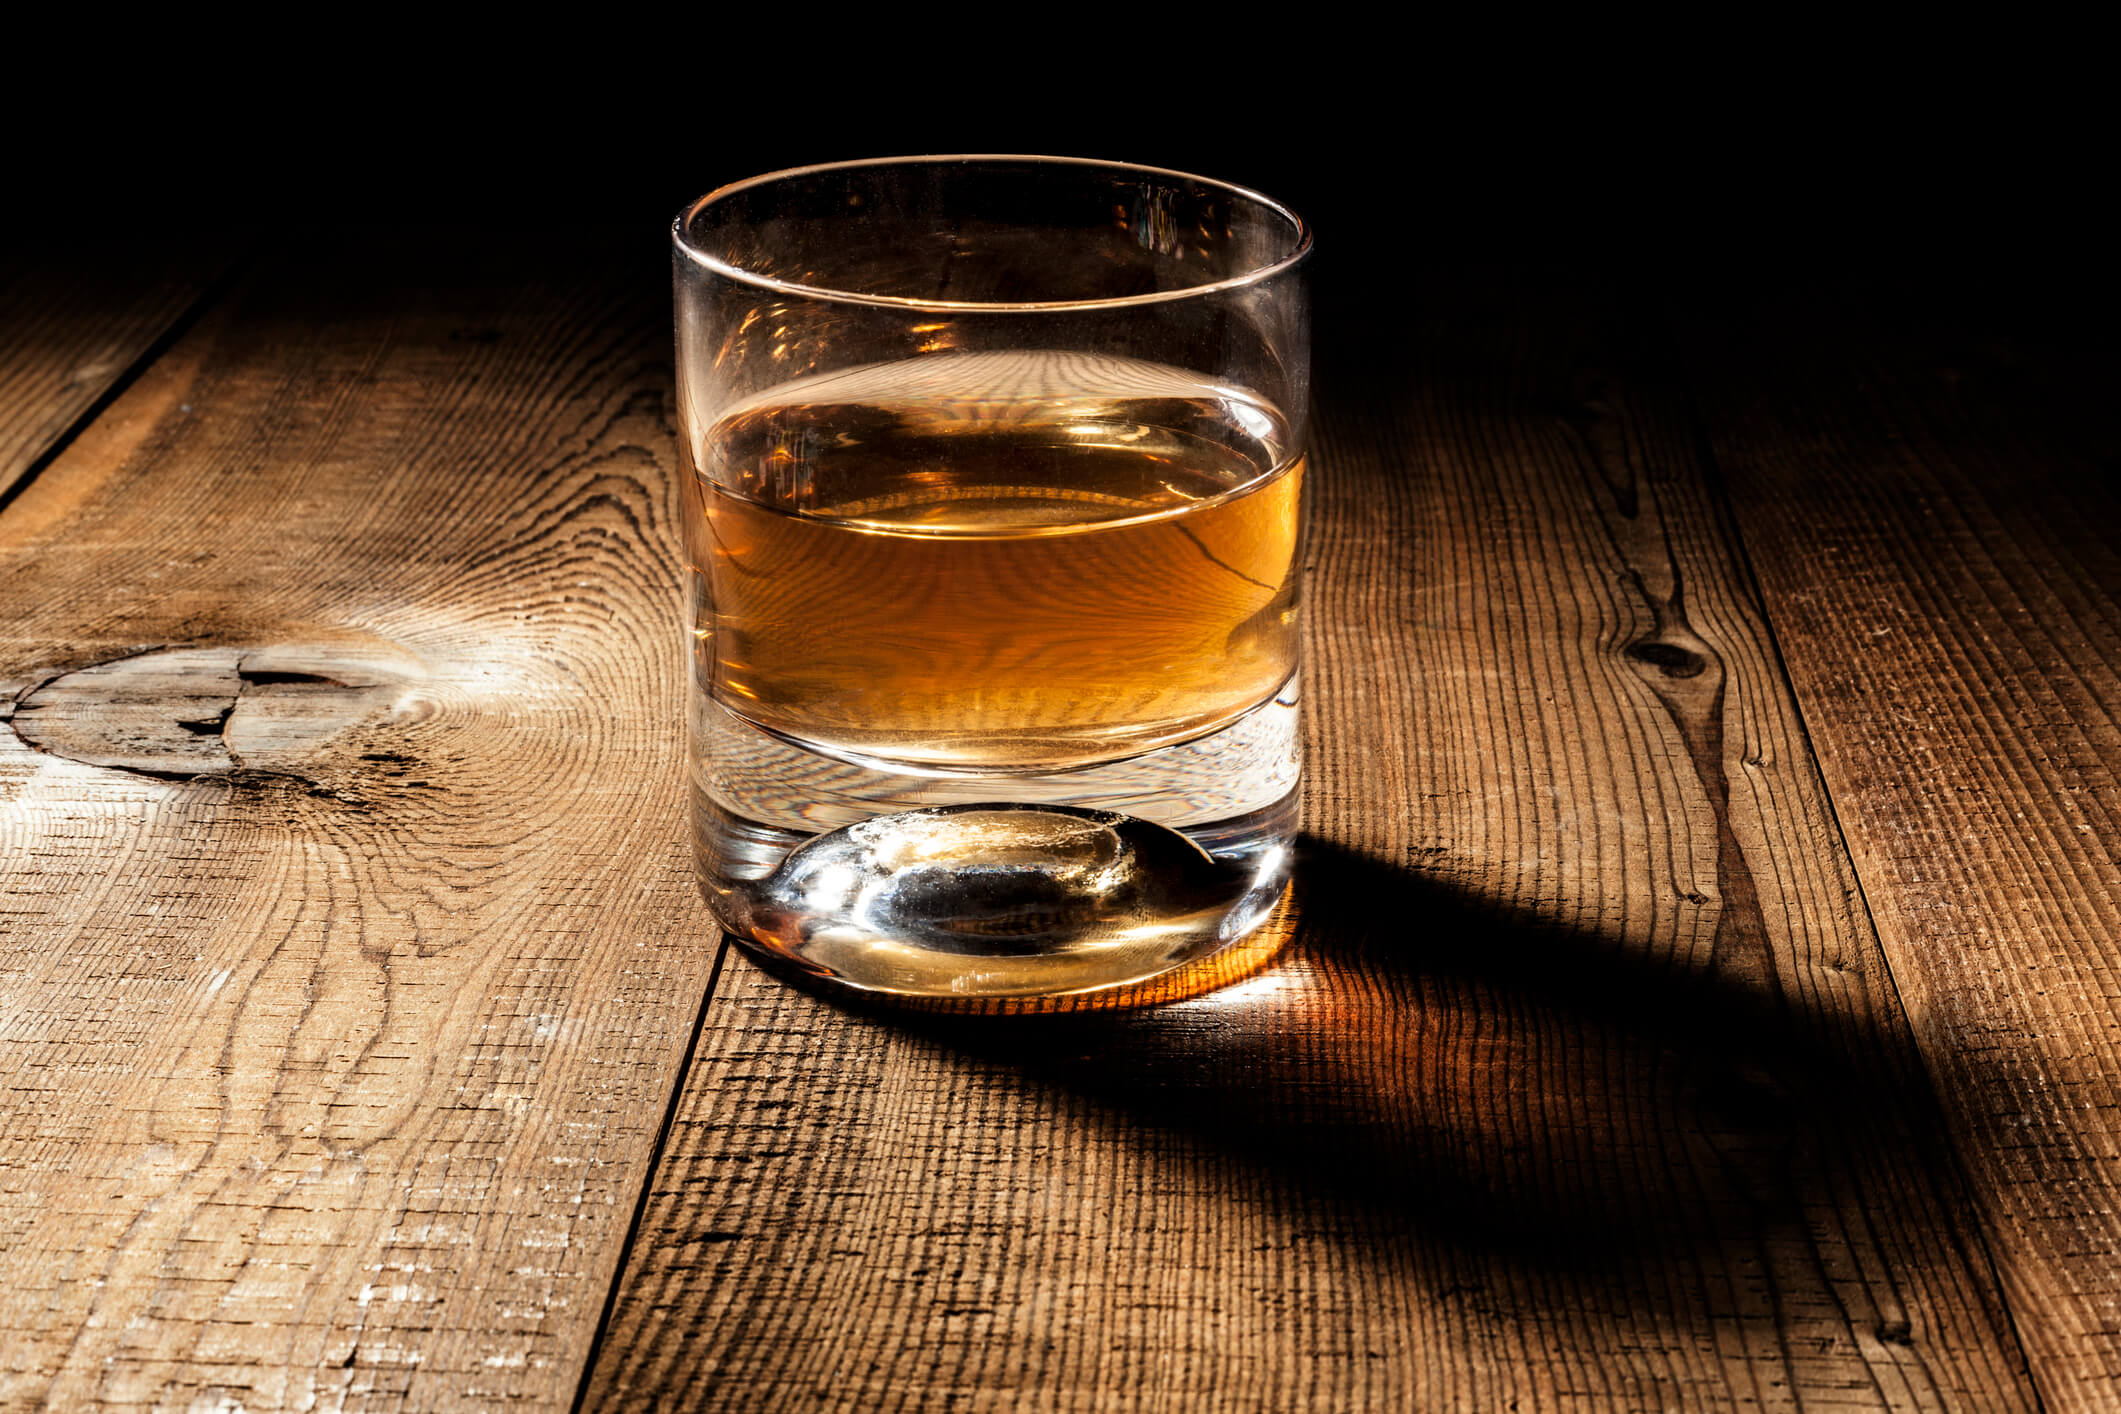 Brown spirit in a rocks glass against a dark background